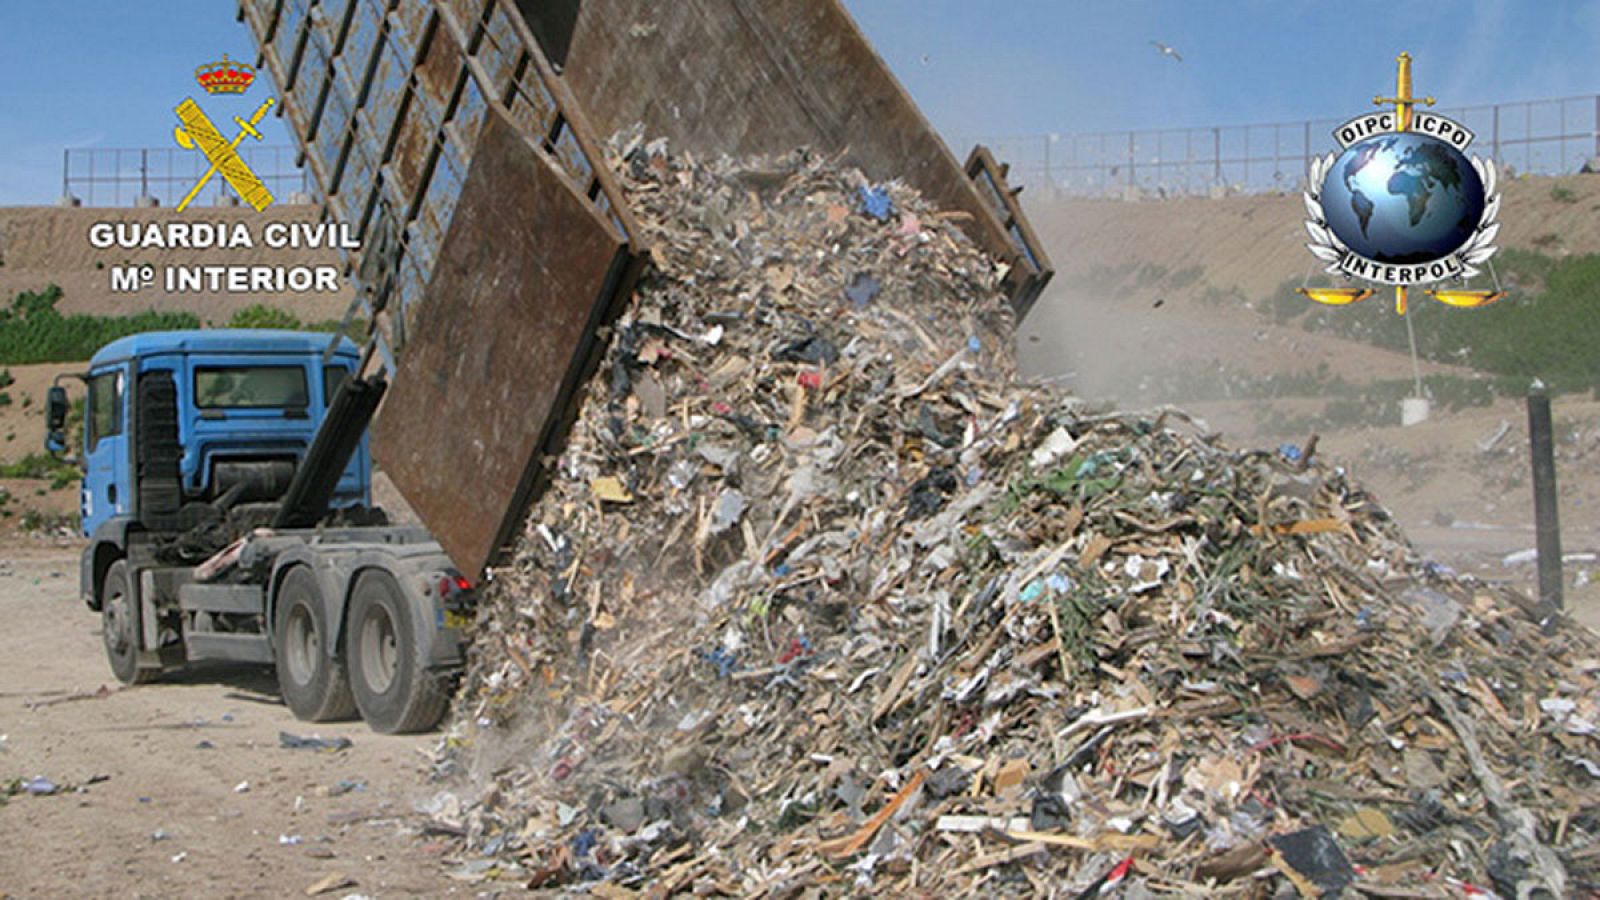 Un camión con residuos en una imagen de la Guardia Civil en el marco de la Operación Tyson